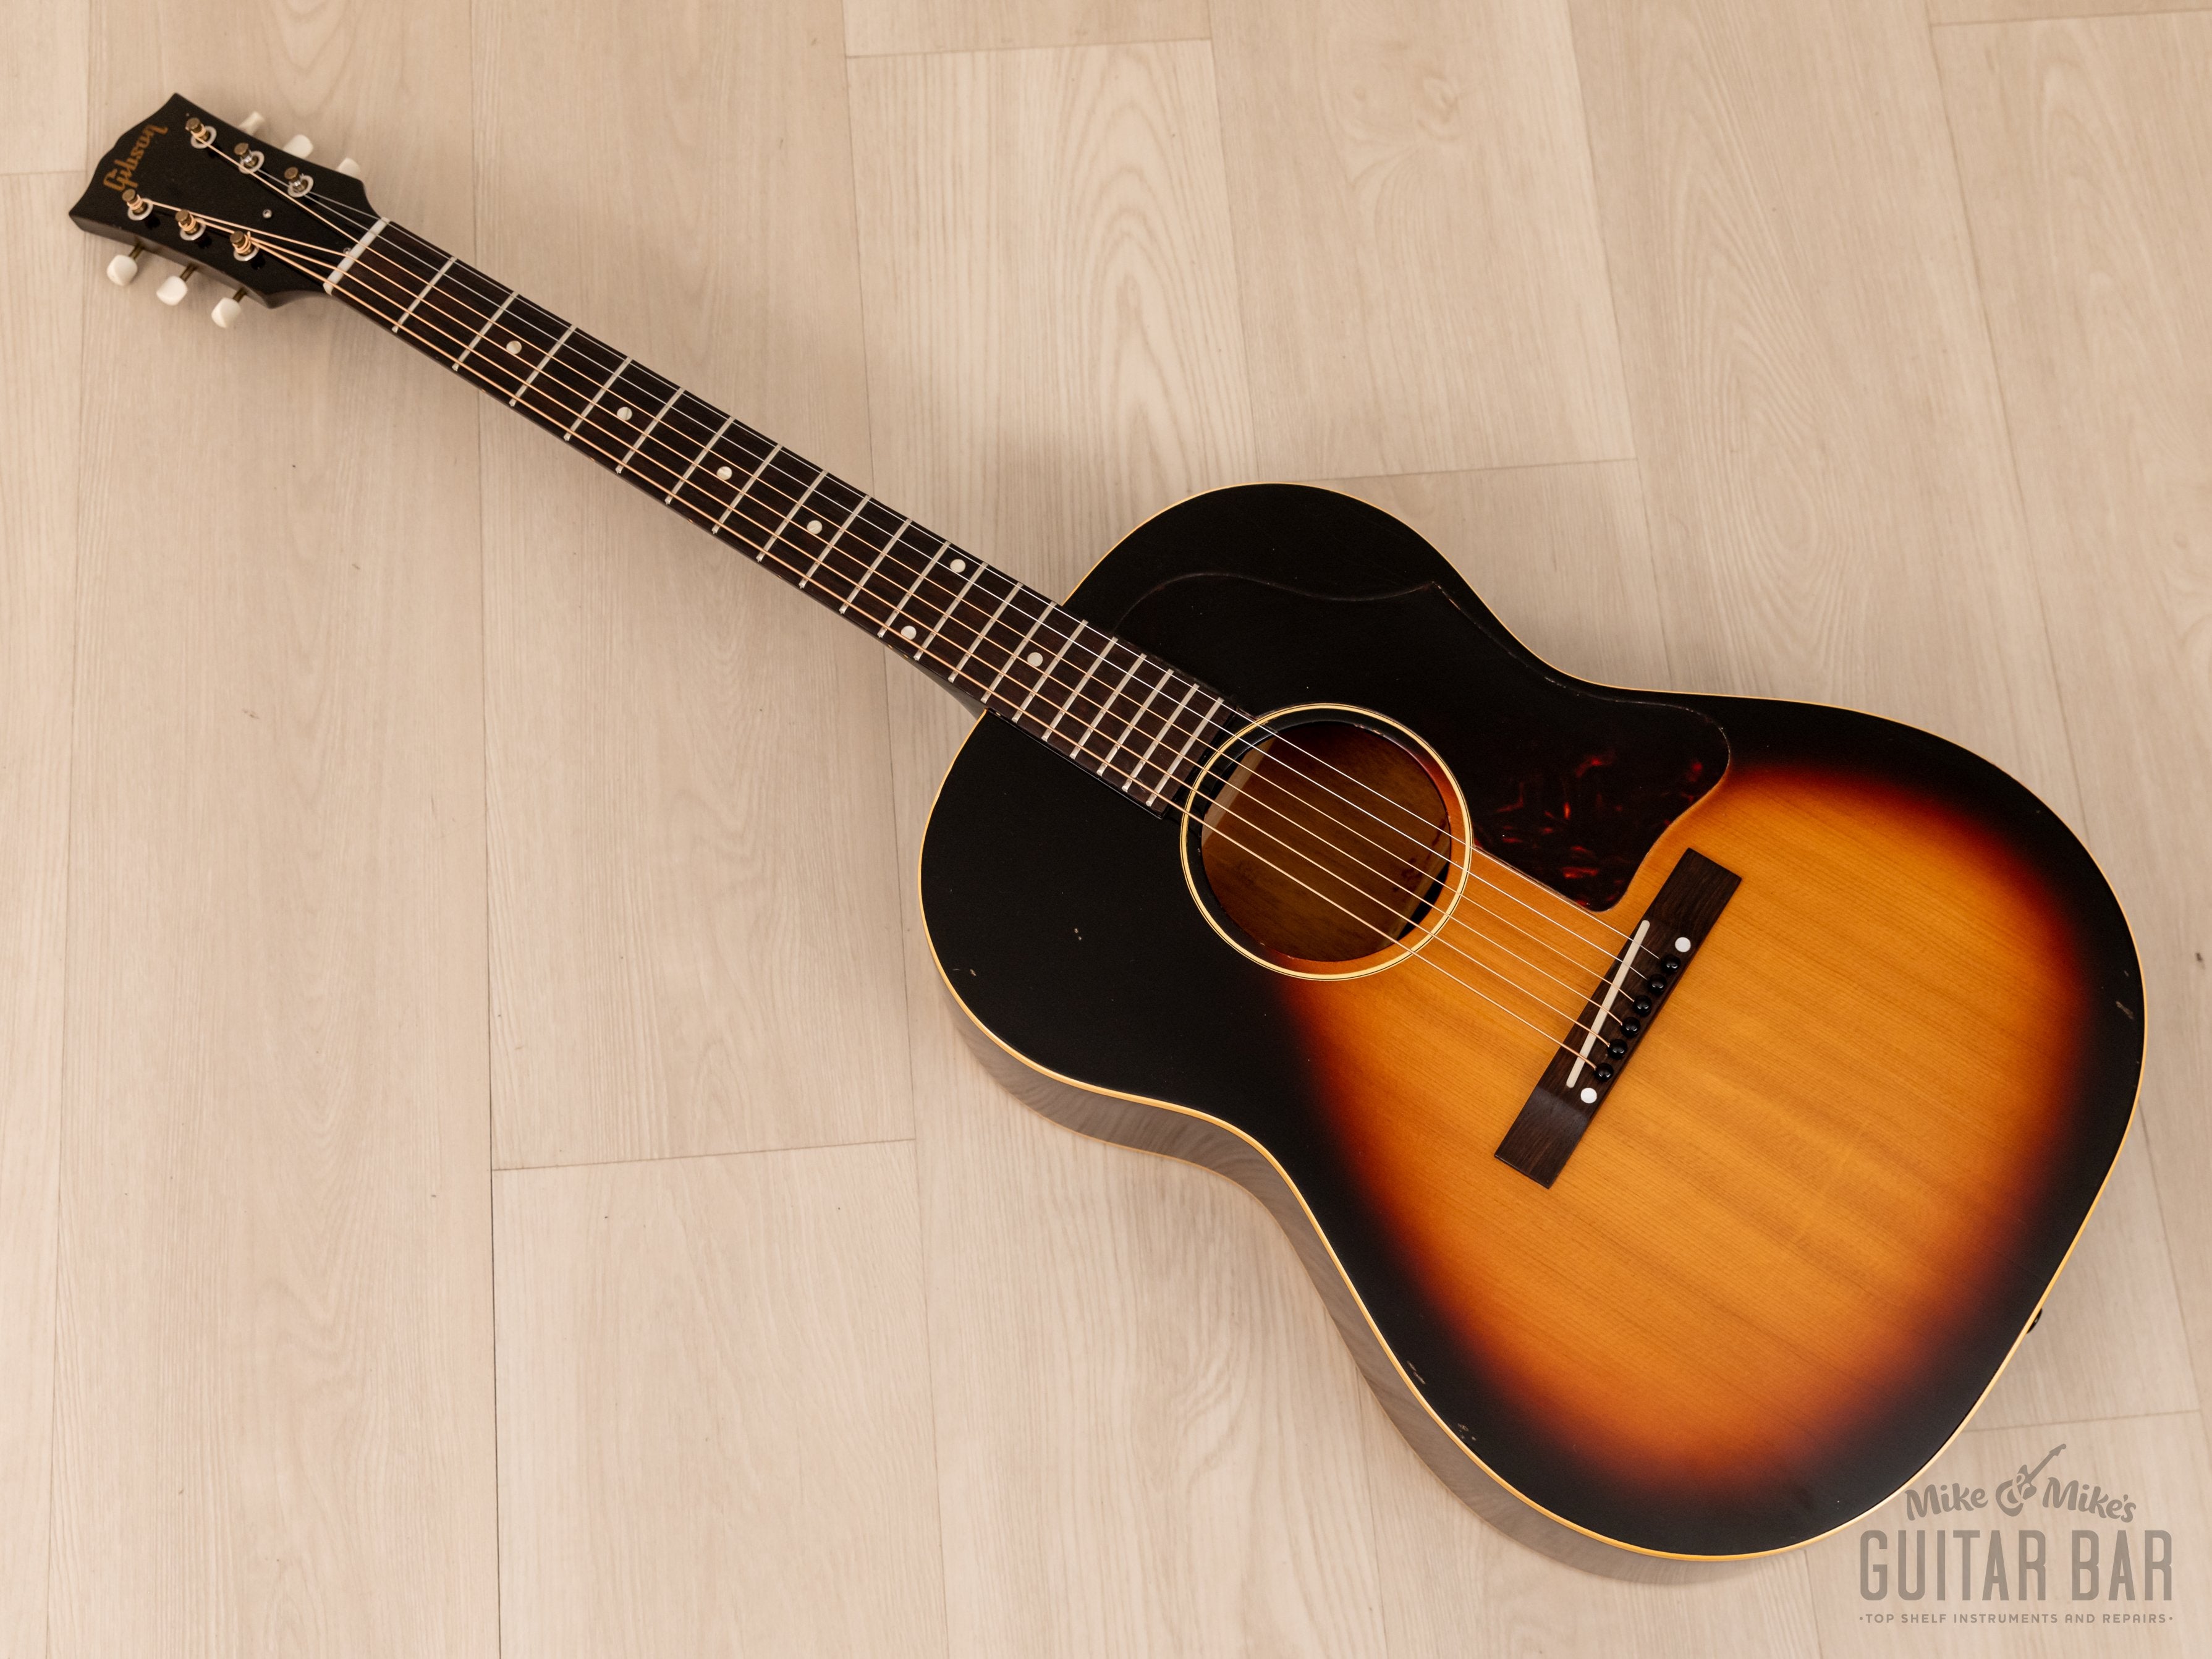 1962 Gibson LG-1 Vintage Acoustic Guitar Sunburst w/ Case